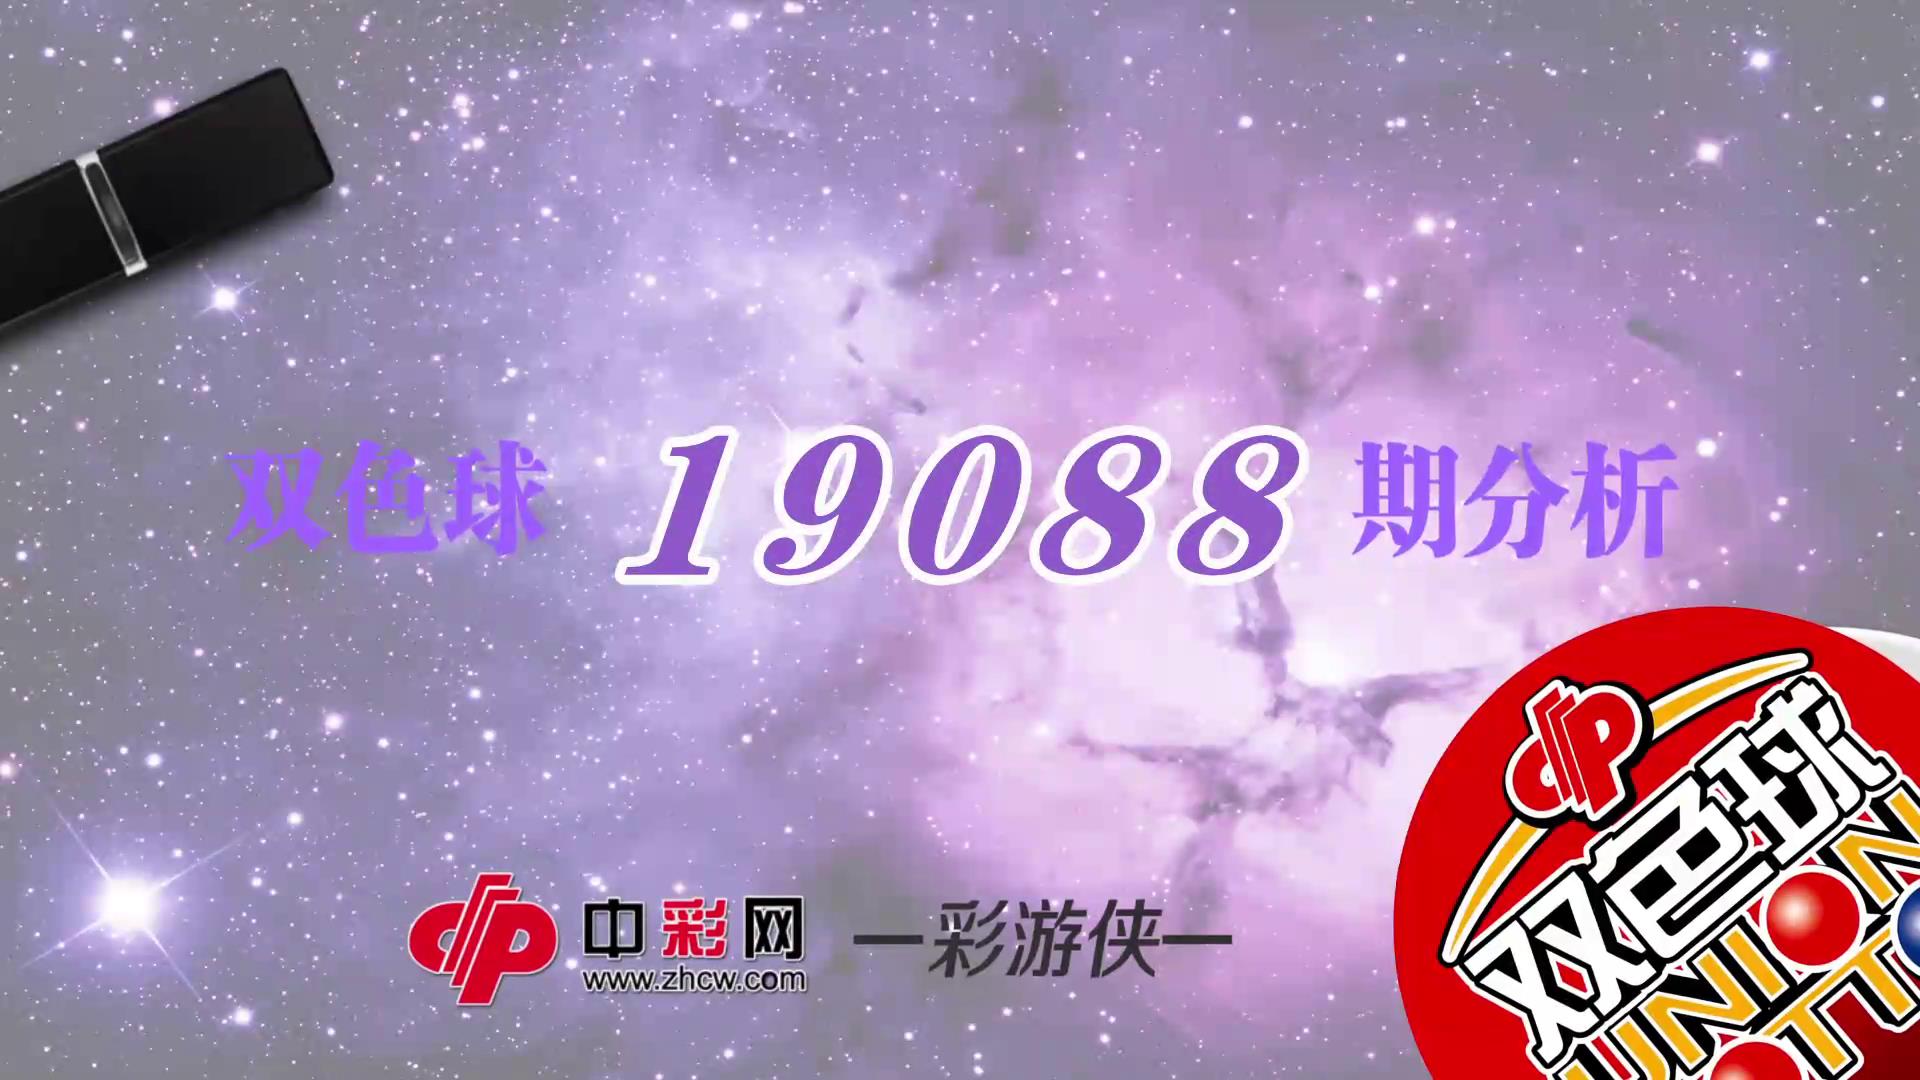 【中彩视频】彩游侠双色球第19088期